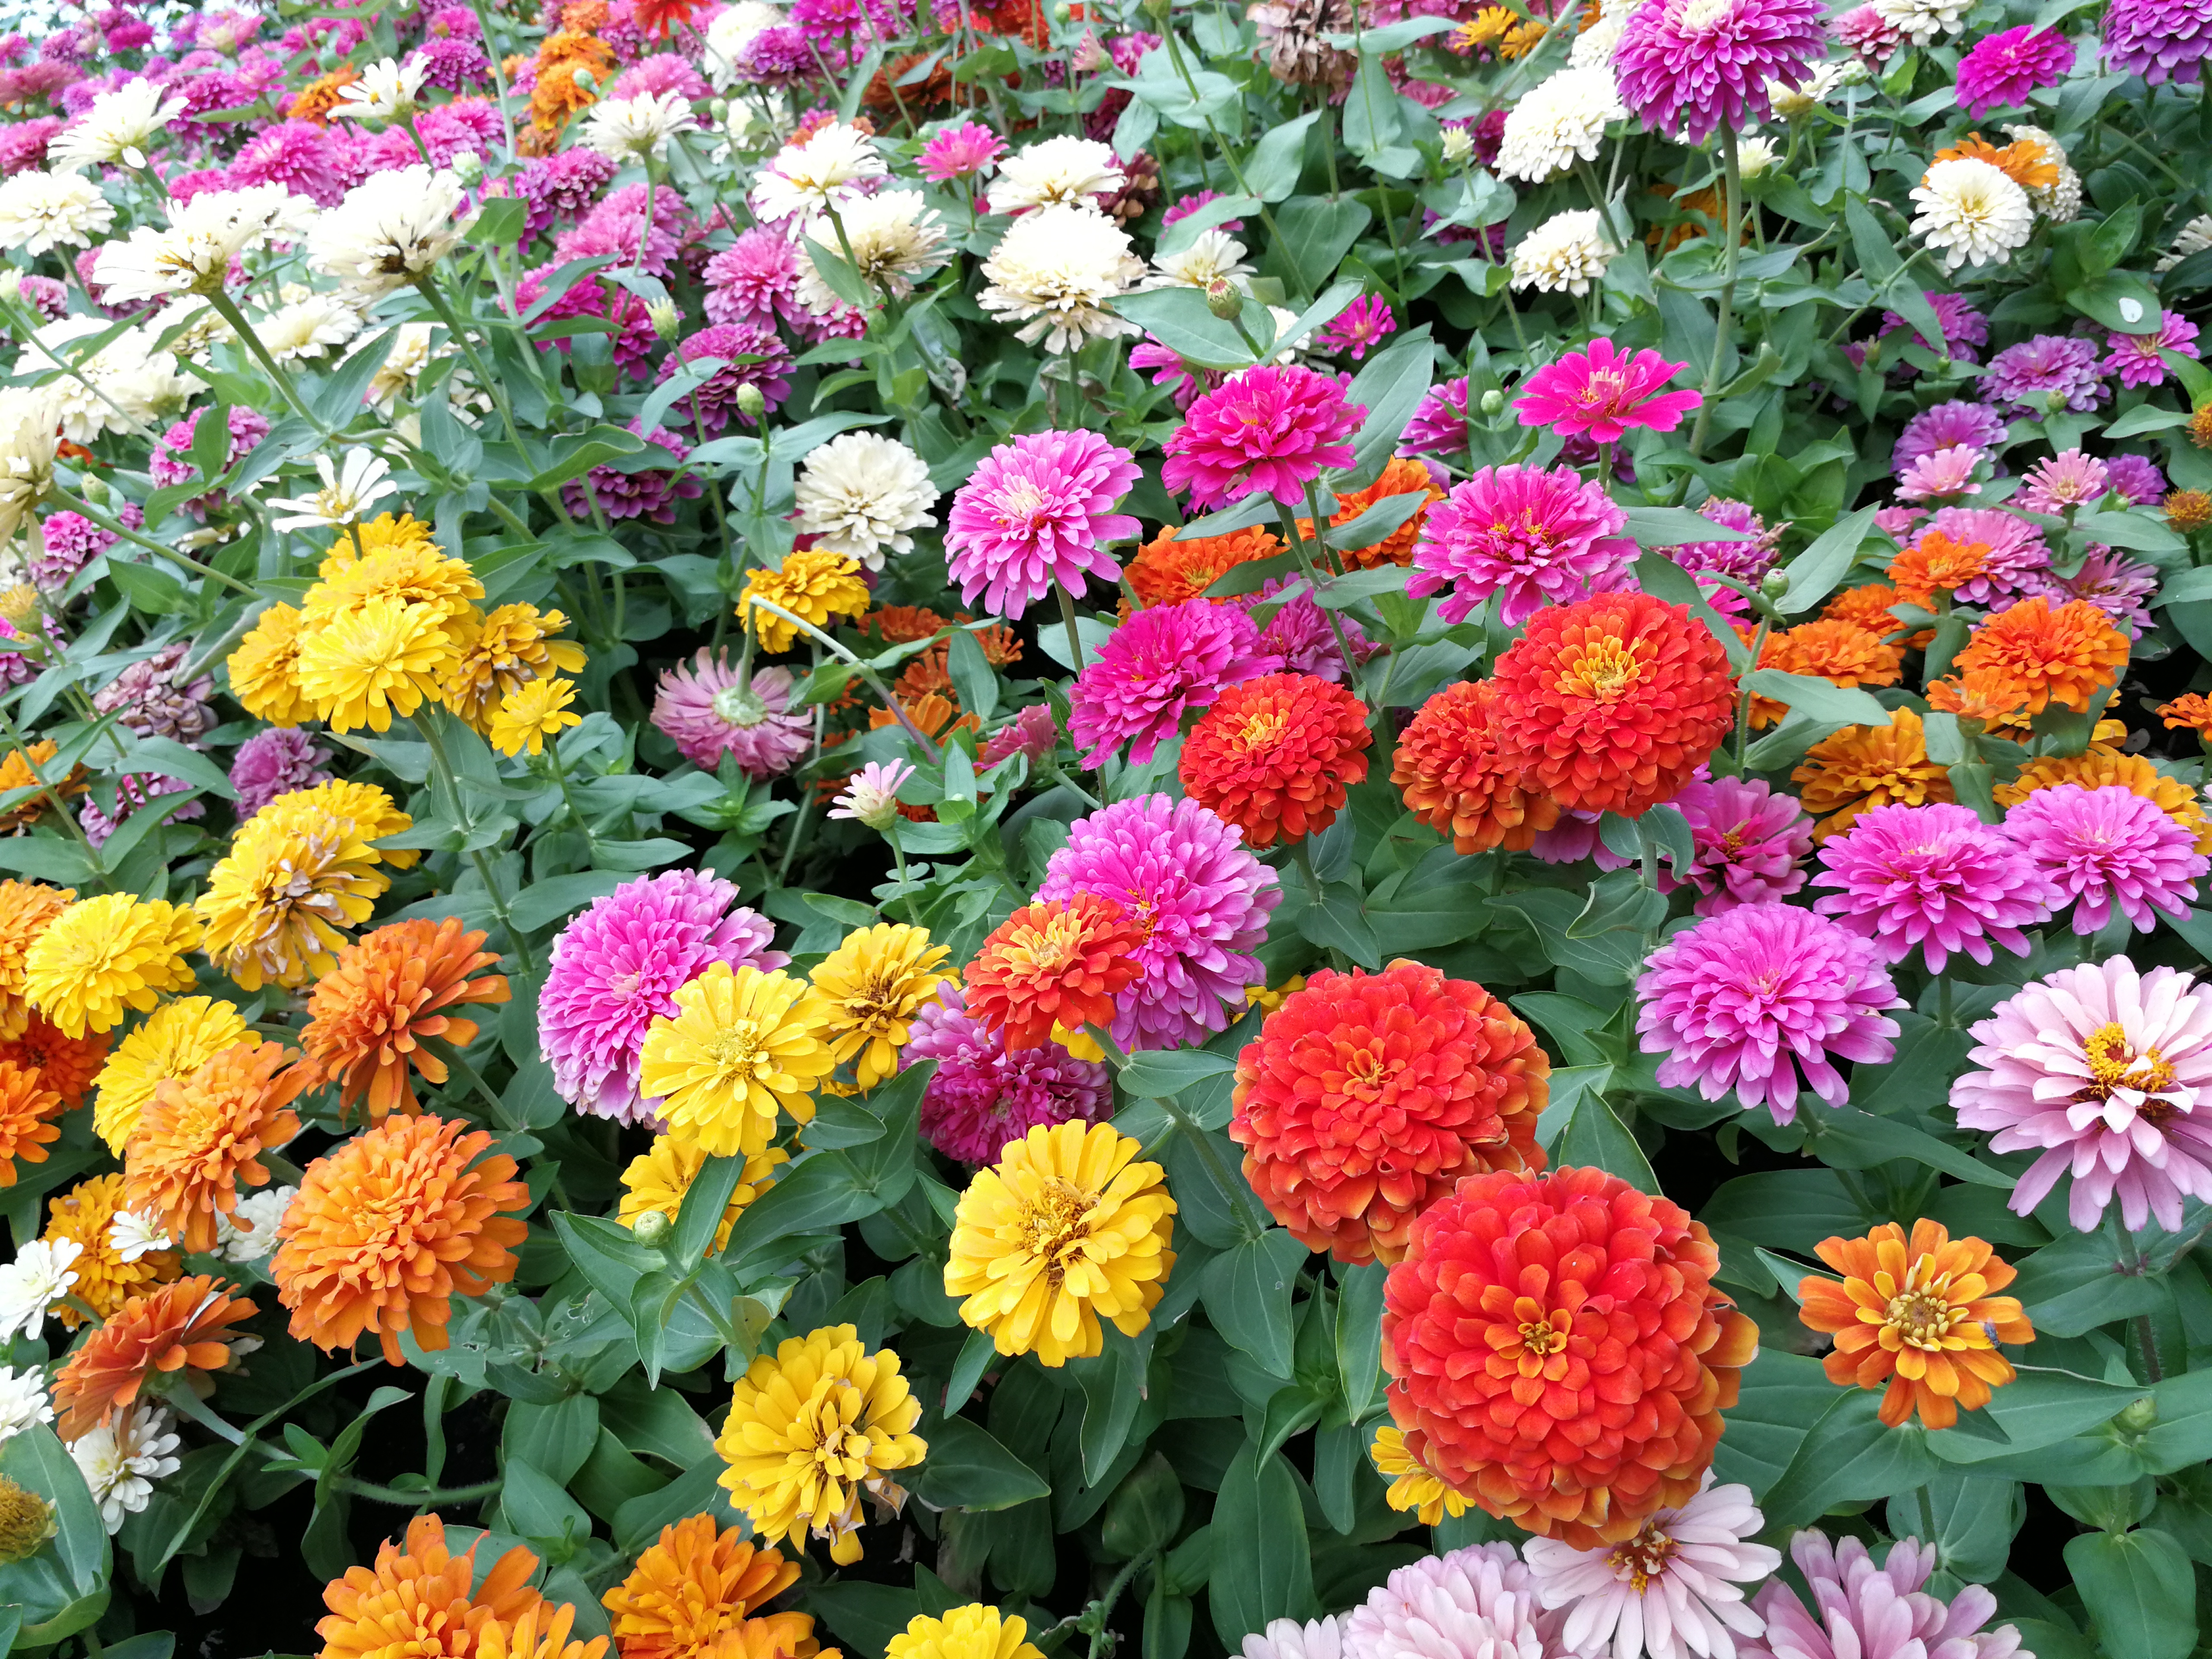 Zinnia : des fleurs tout l’été, jusqu’aux premières gelées ! Copyright (c) 2021 SUJITTRA PHONGVIVAT/Shutterstock.